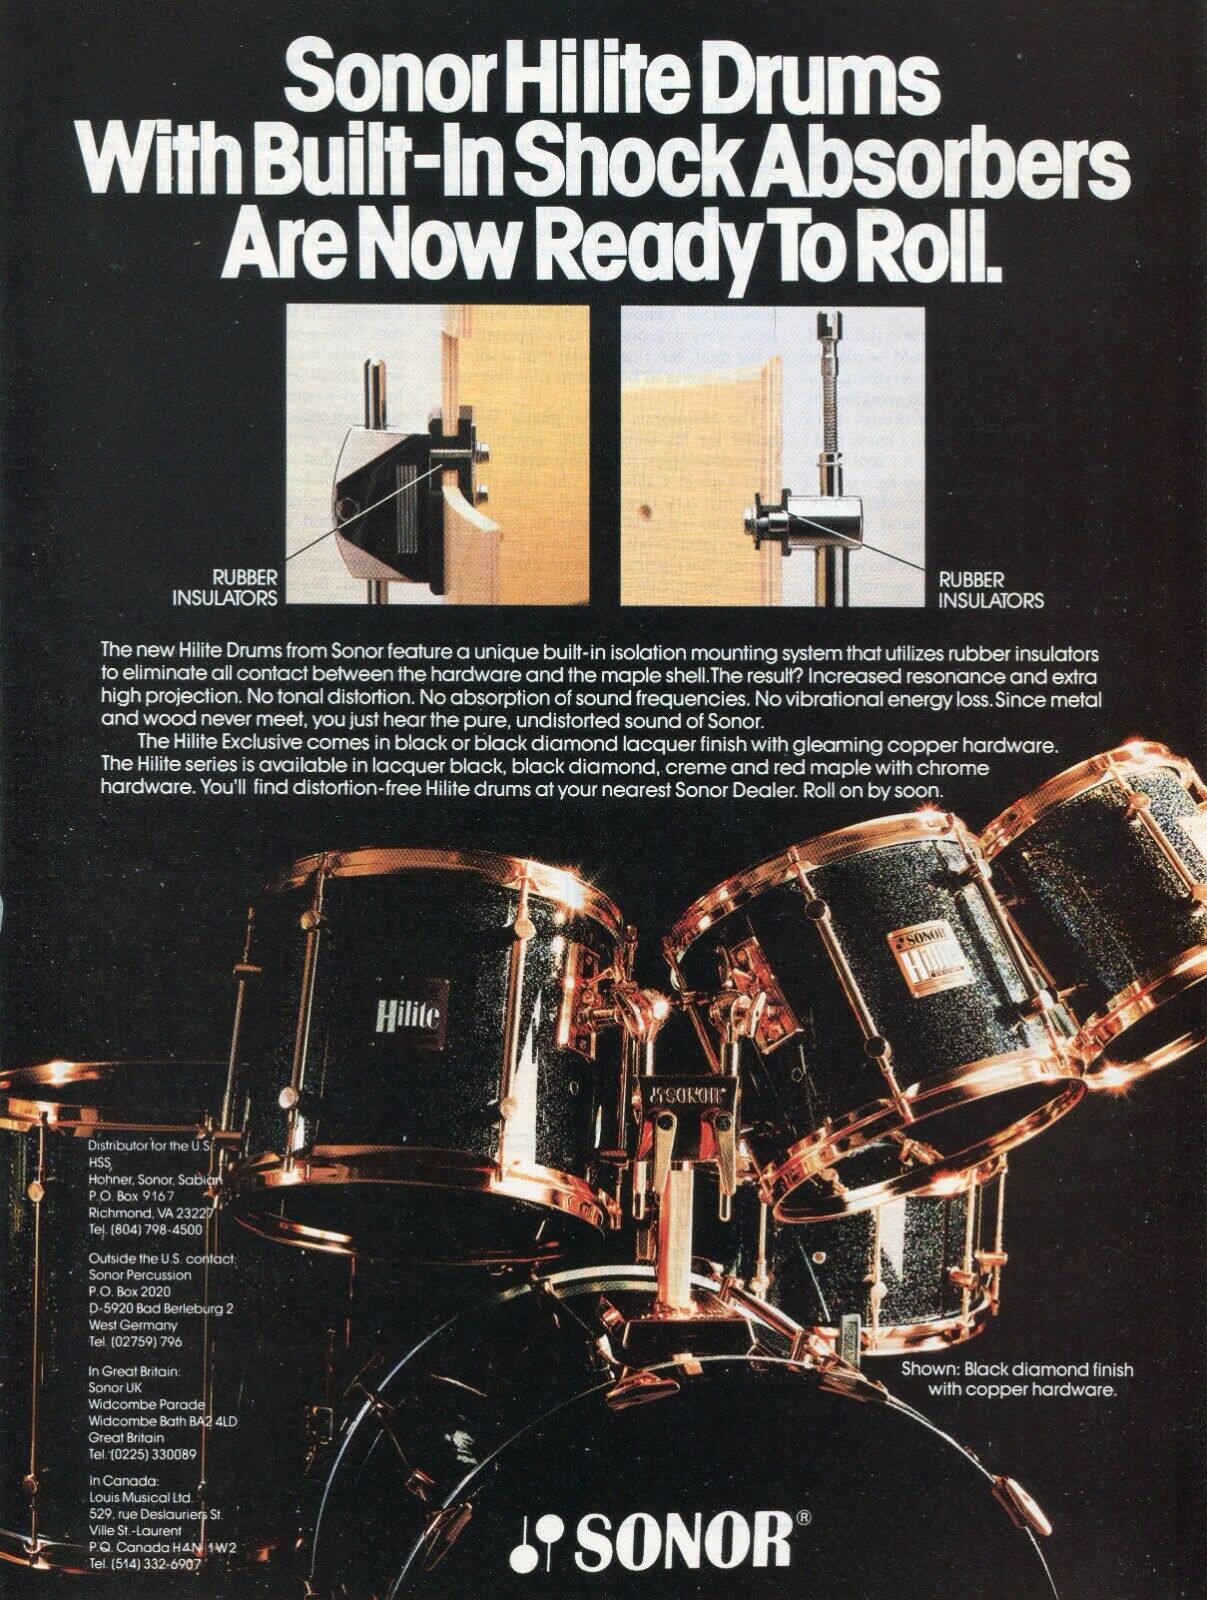 1988 Print Ad of Sonor Hilite Drum Kit Black Diamond Lacquer Copper Hardware